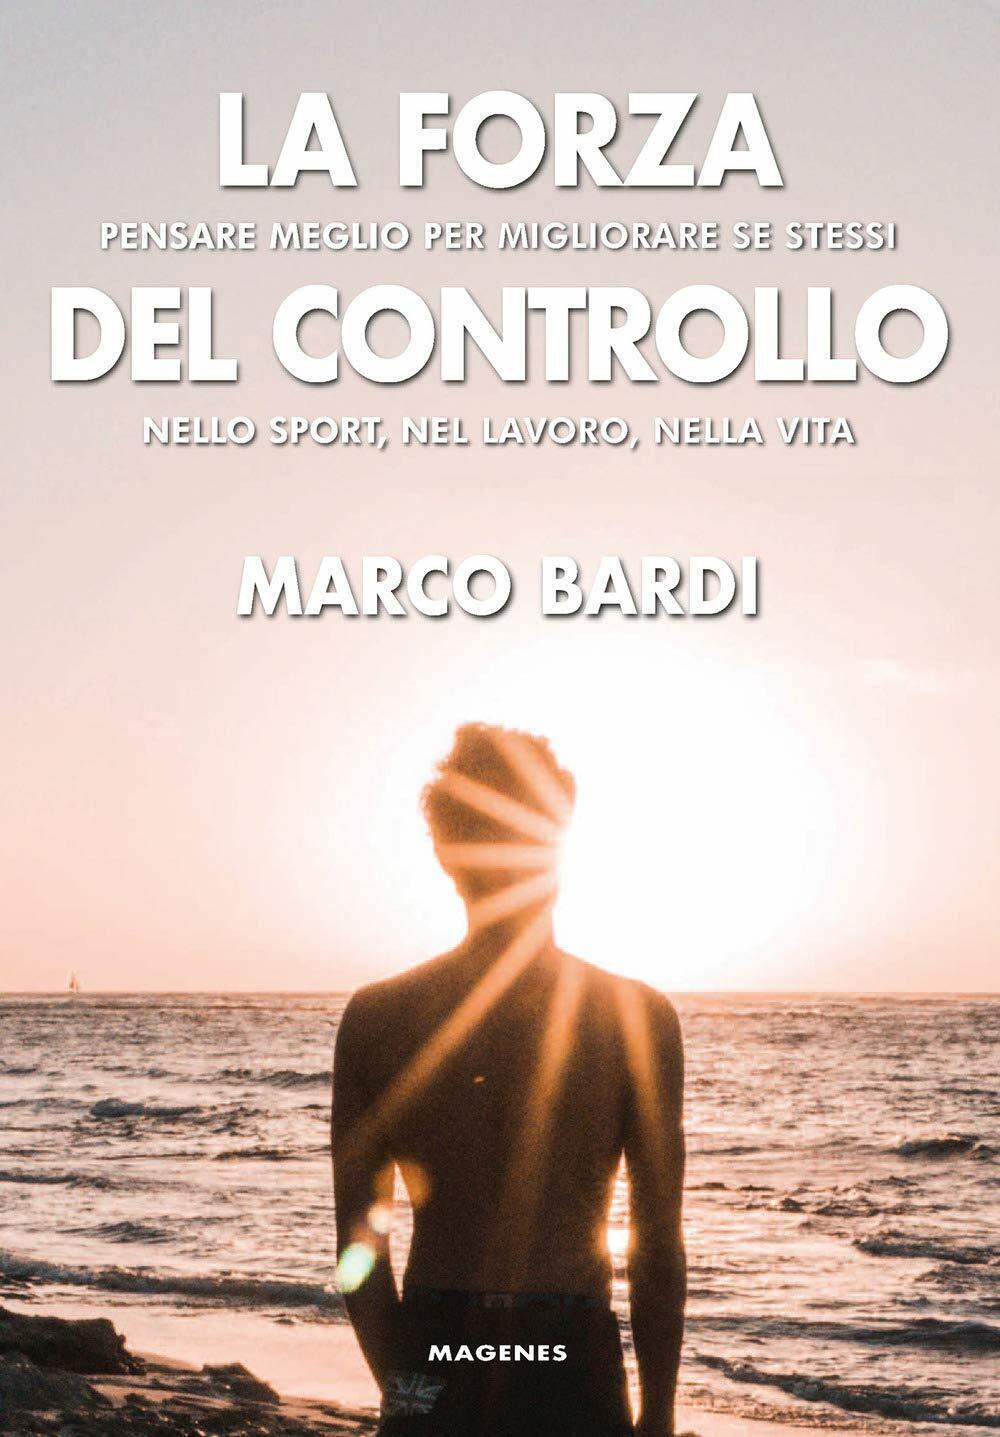 La forza del controllo - Marco Bardi - Magenes, 2020